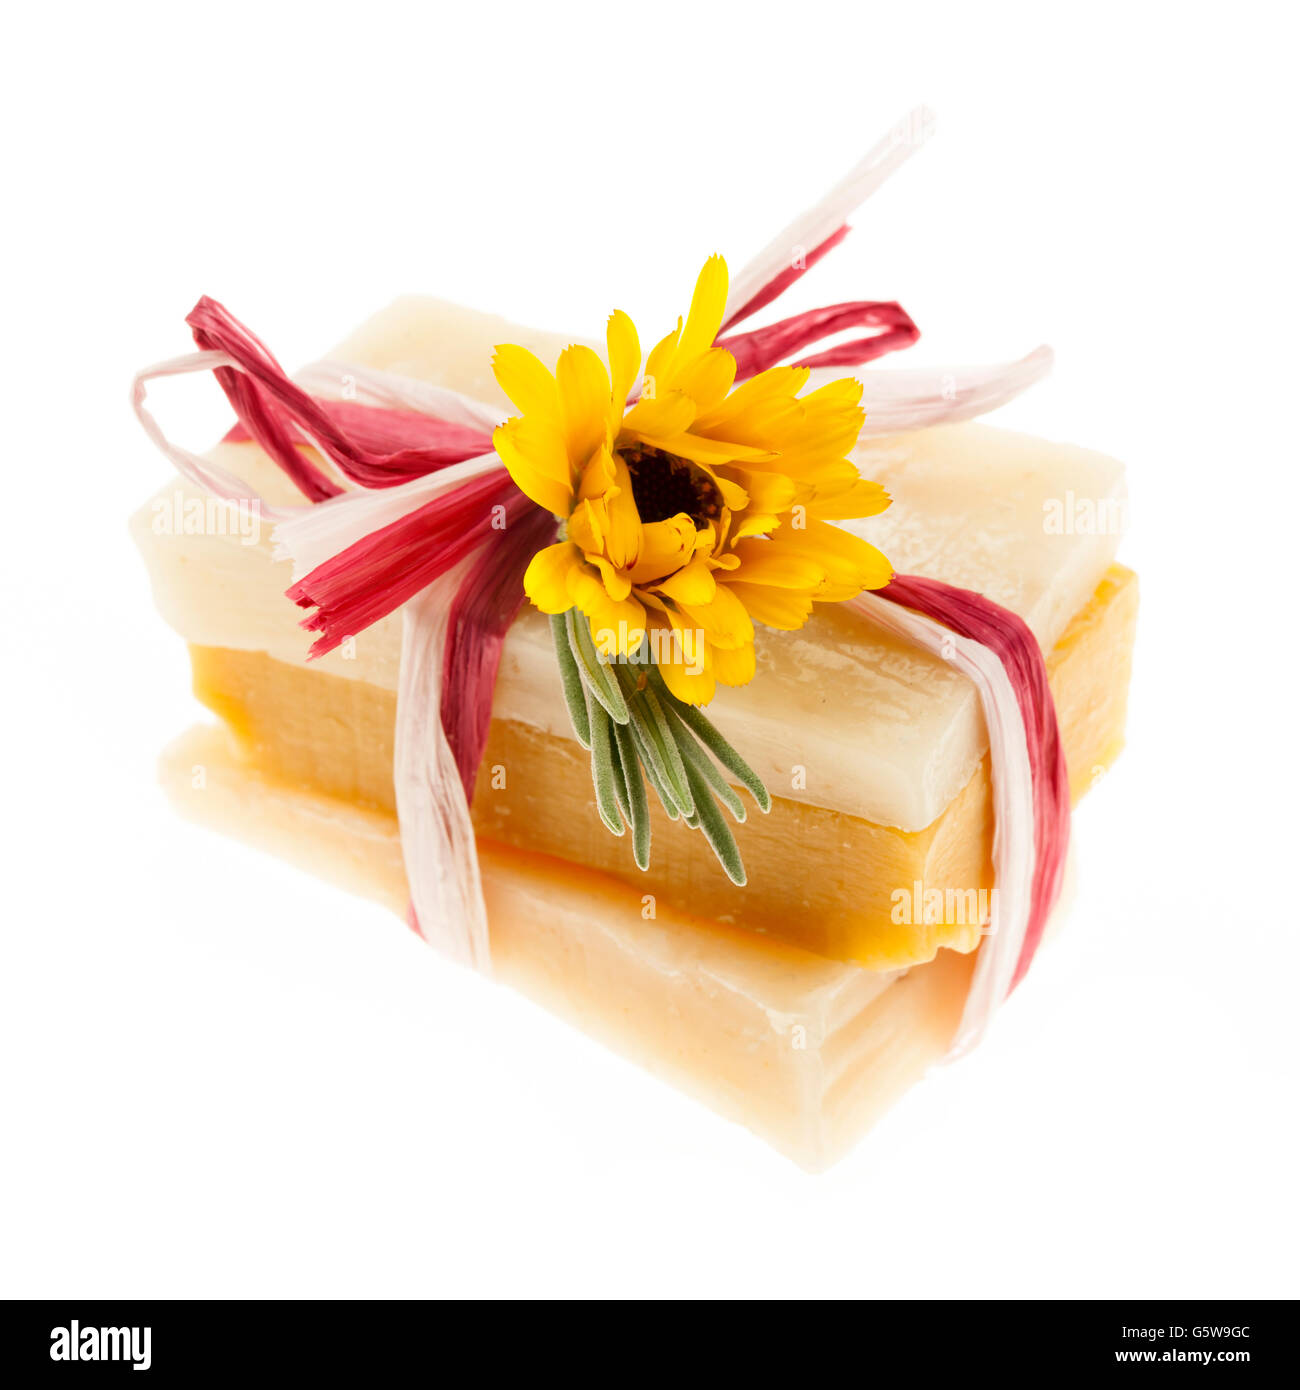 Diversi fatti a mano a base di erbe sapone artigianale pezzi legati con fiori freschi isolati su sfondo bianco Foto Stock